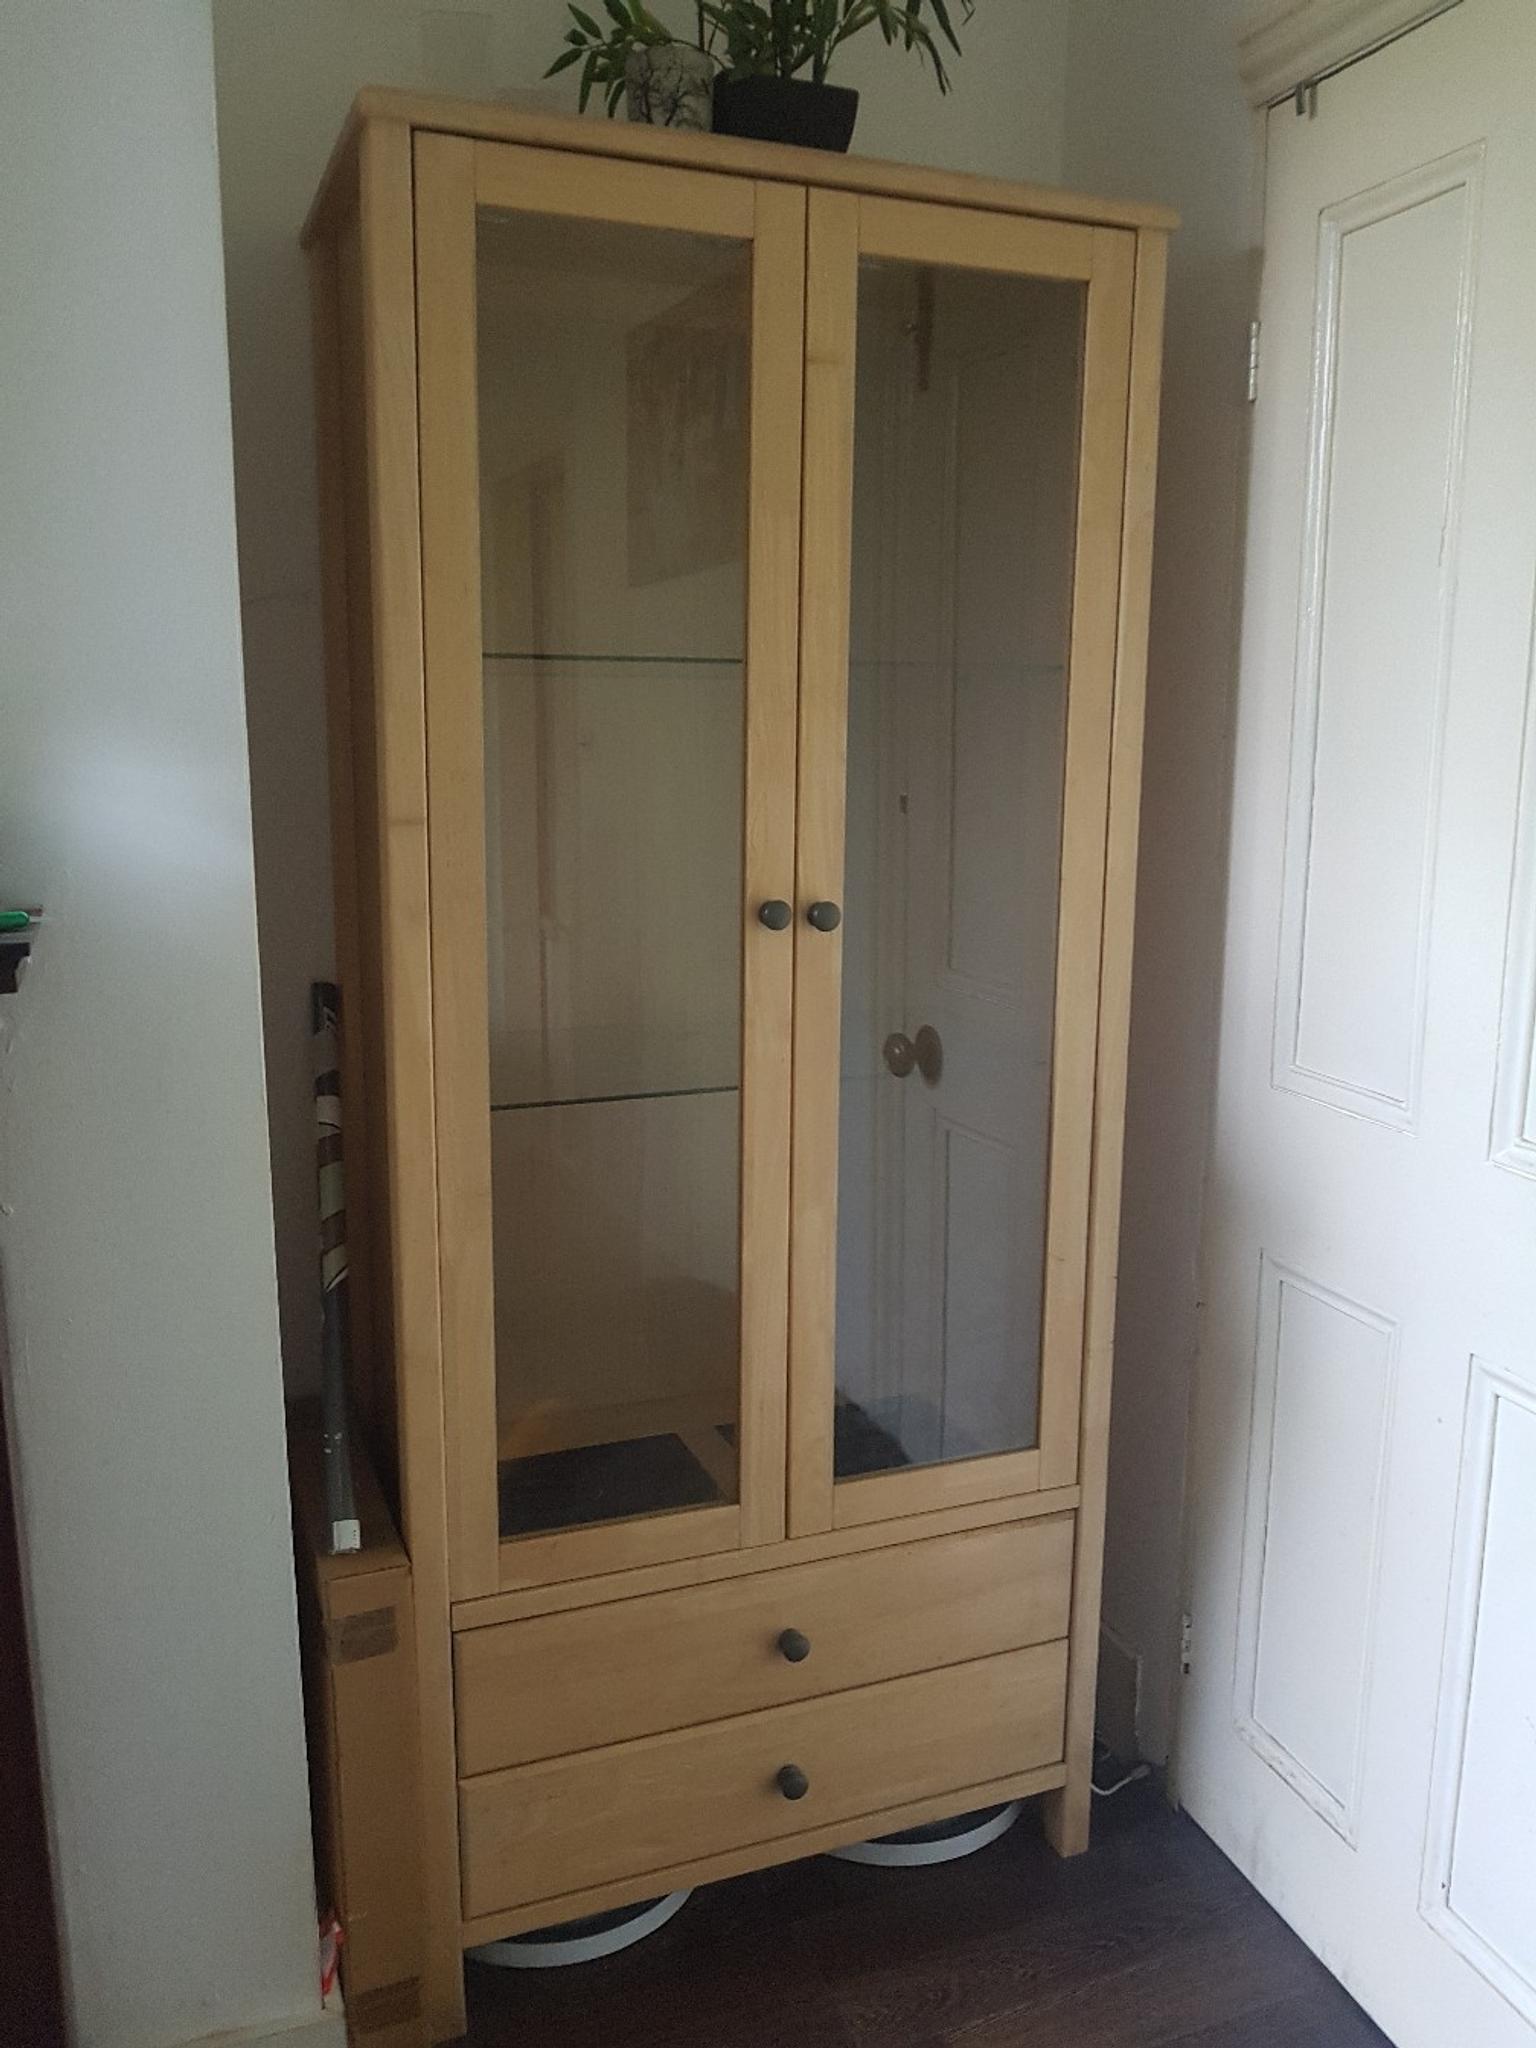 Home Base Wood Cabinet In Sk3 Stockport Fur 45 00 Zum Verkauf